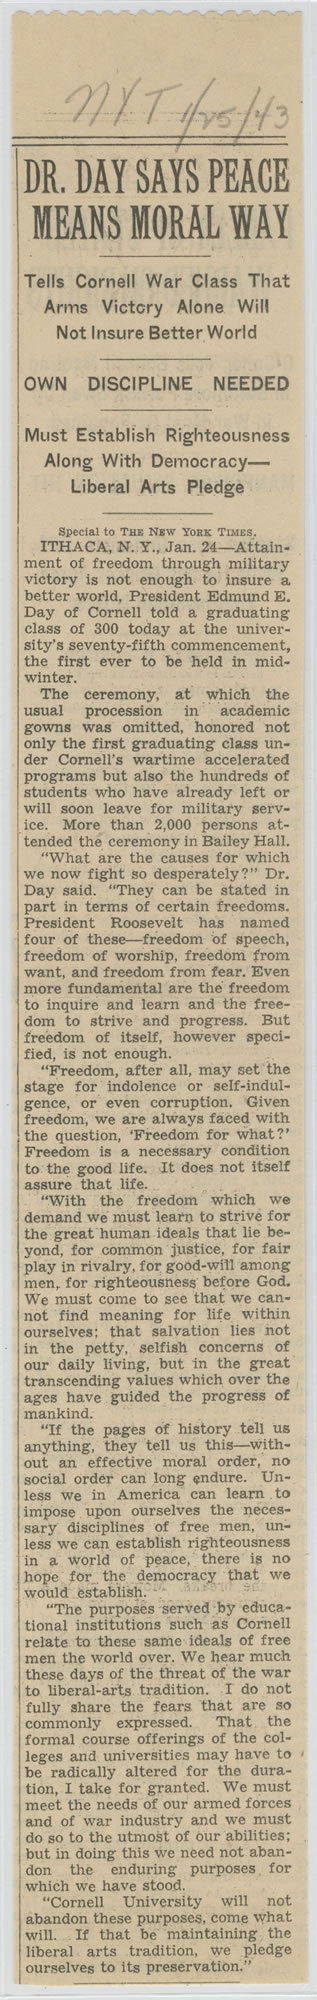 <i>New York Times</i>, January 25, 1943